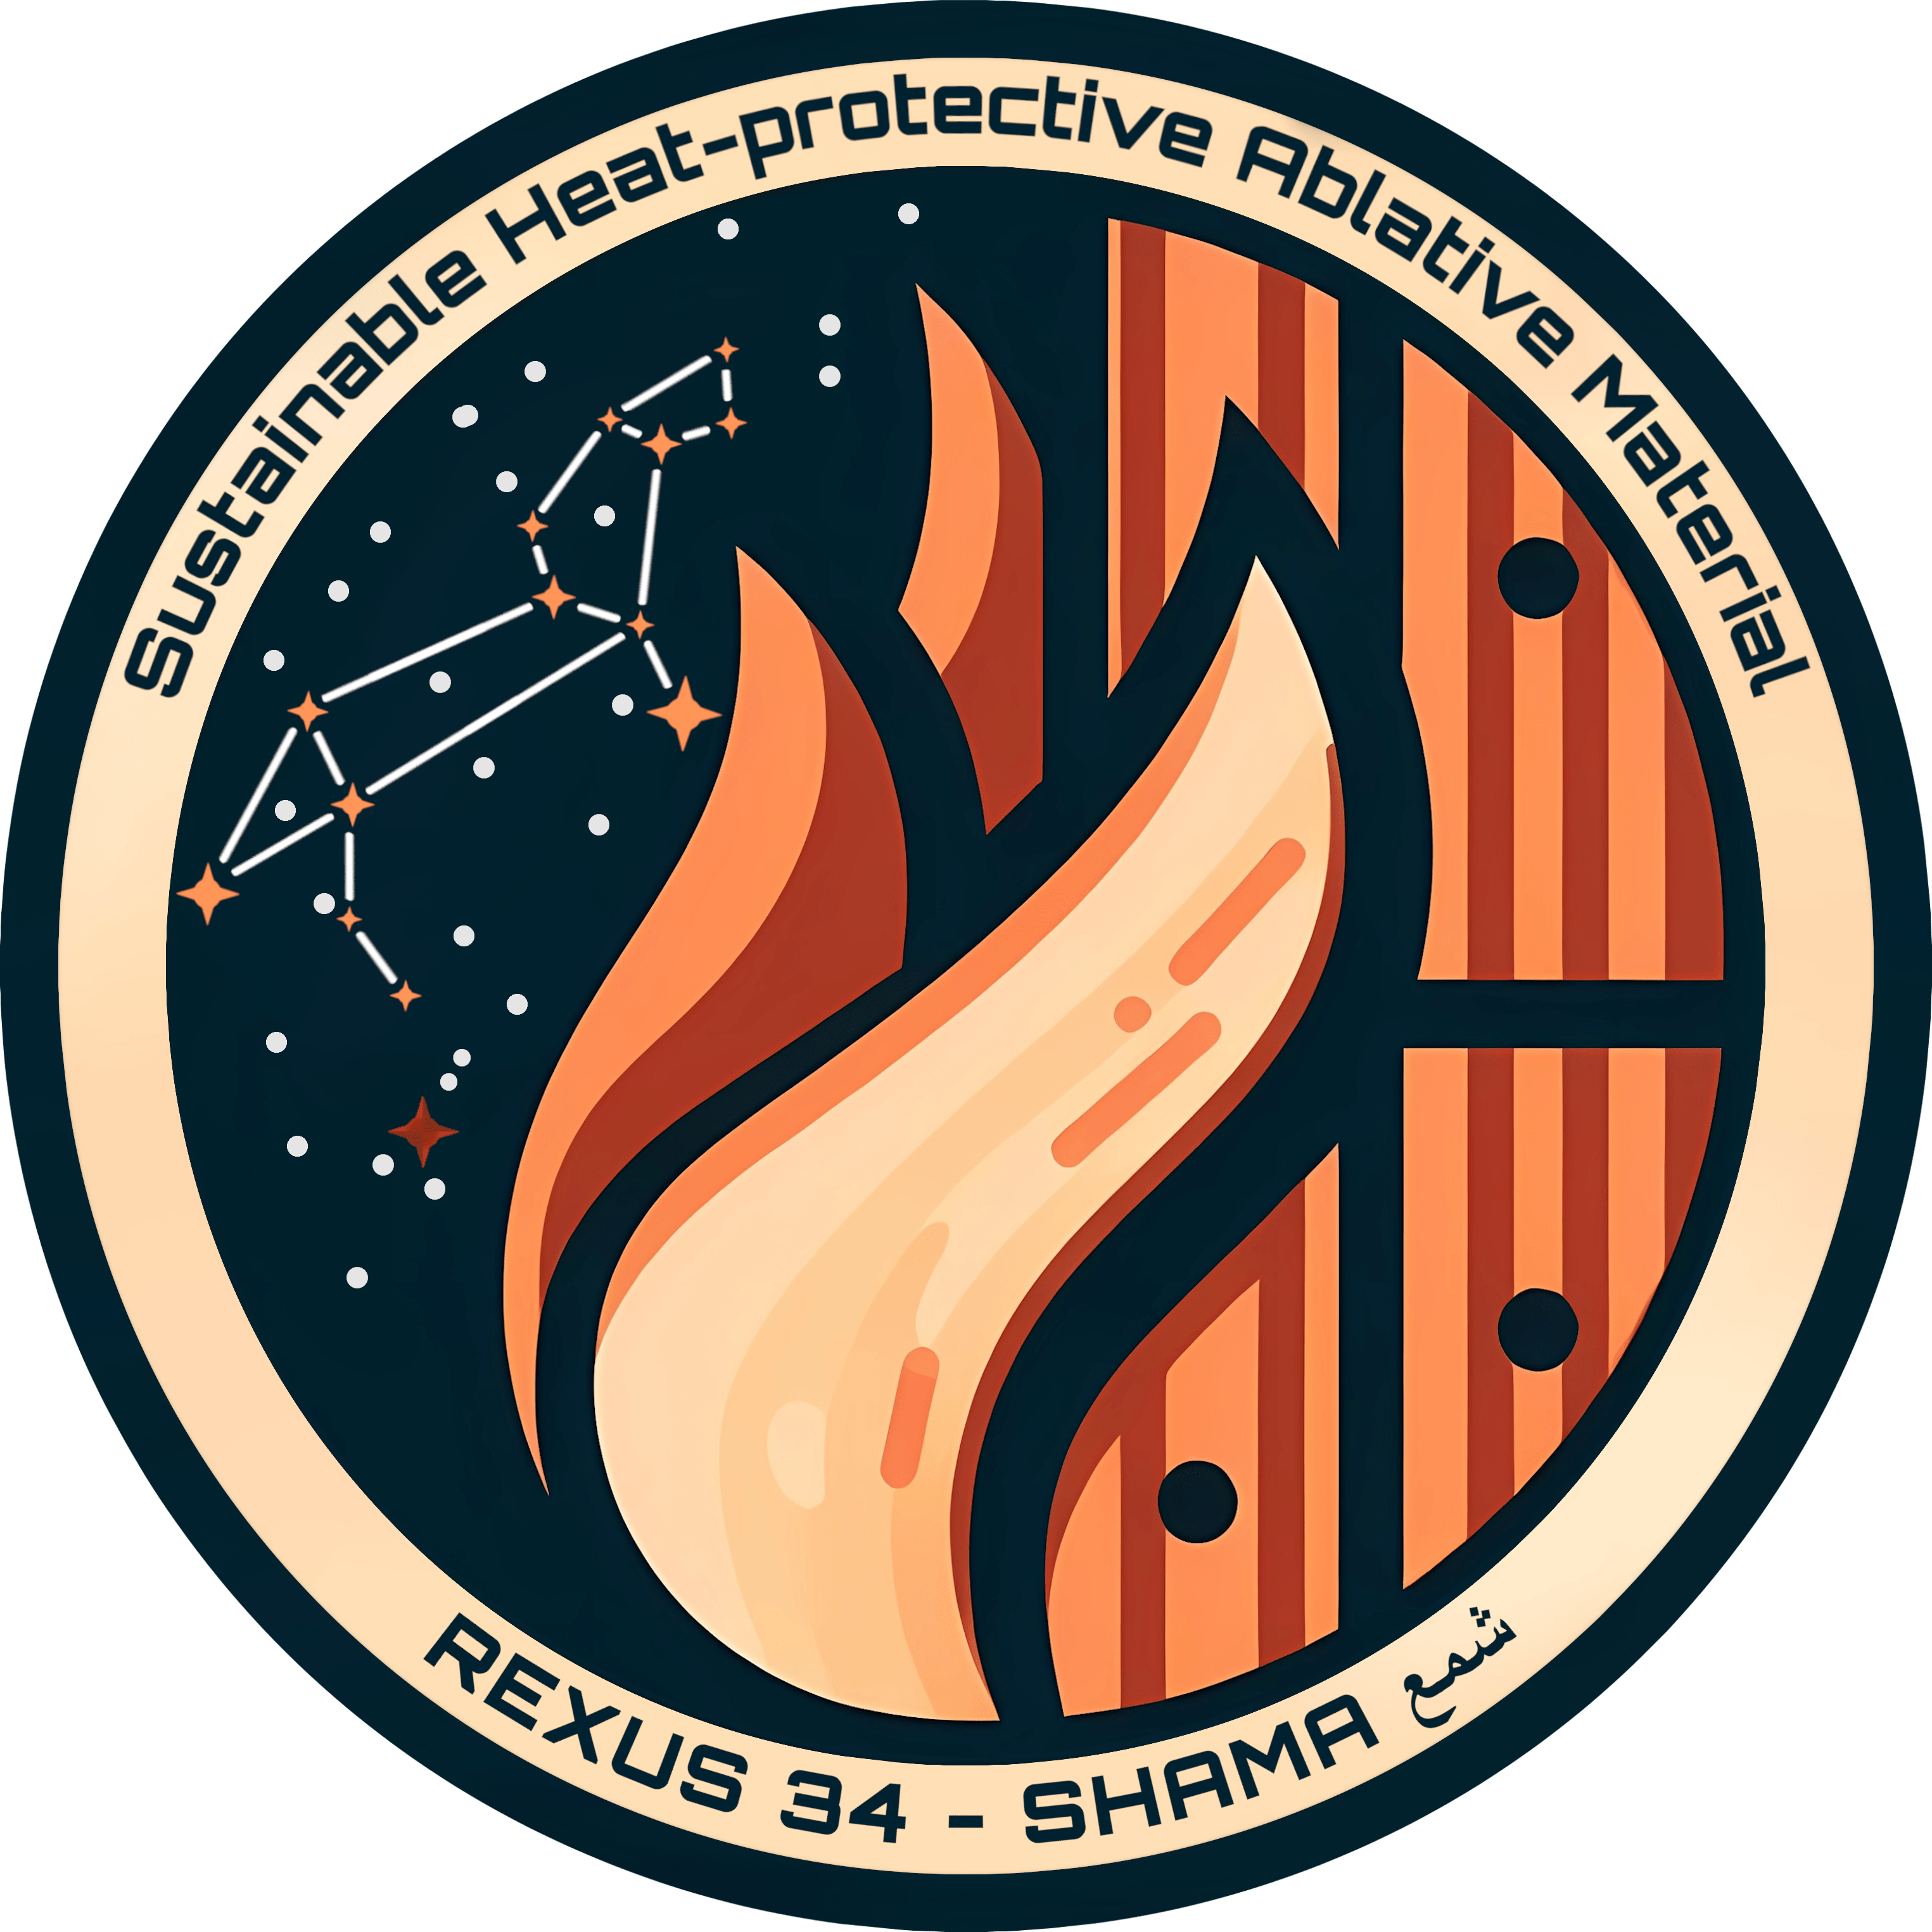 Rundes Logo einer Flamme die auf Holz trifft, daneben das Sternenbild Löwe und dem Stern "SHAMA" extra markiert.Außen rum die Schriftzüge "Sustainable Heat-protactive Ablative Material" und "REXUS 34 - SHAMA"